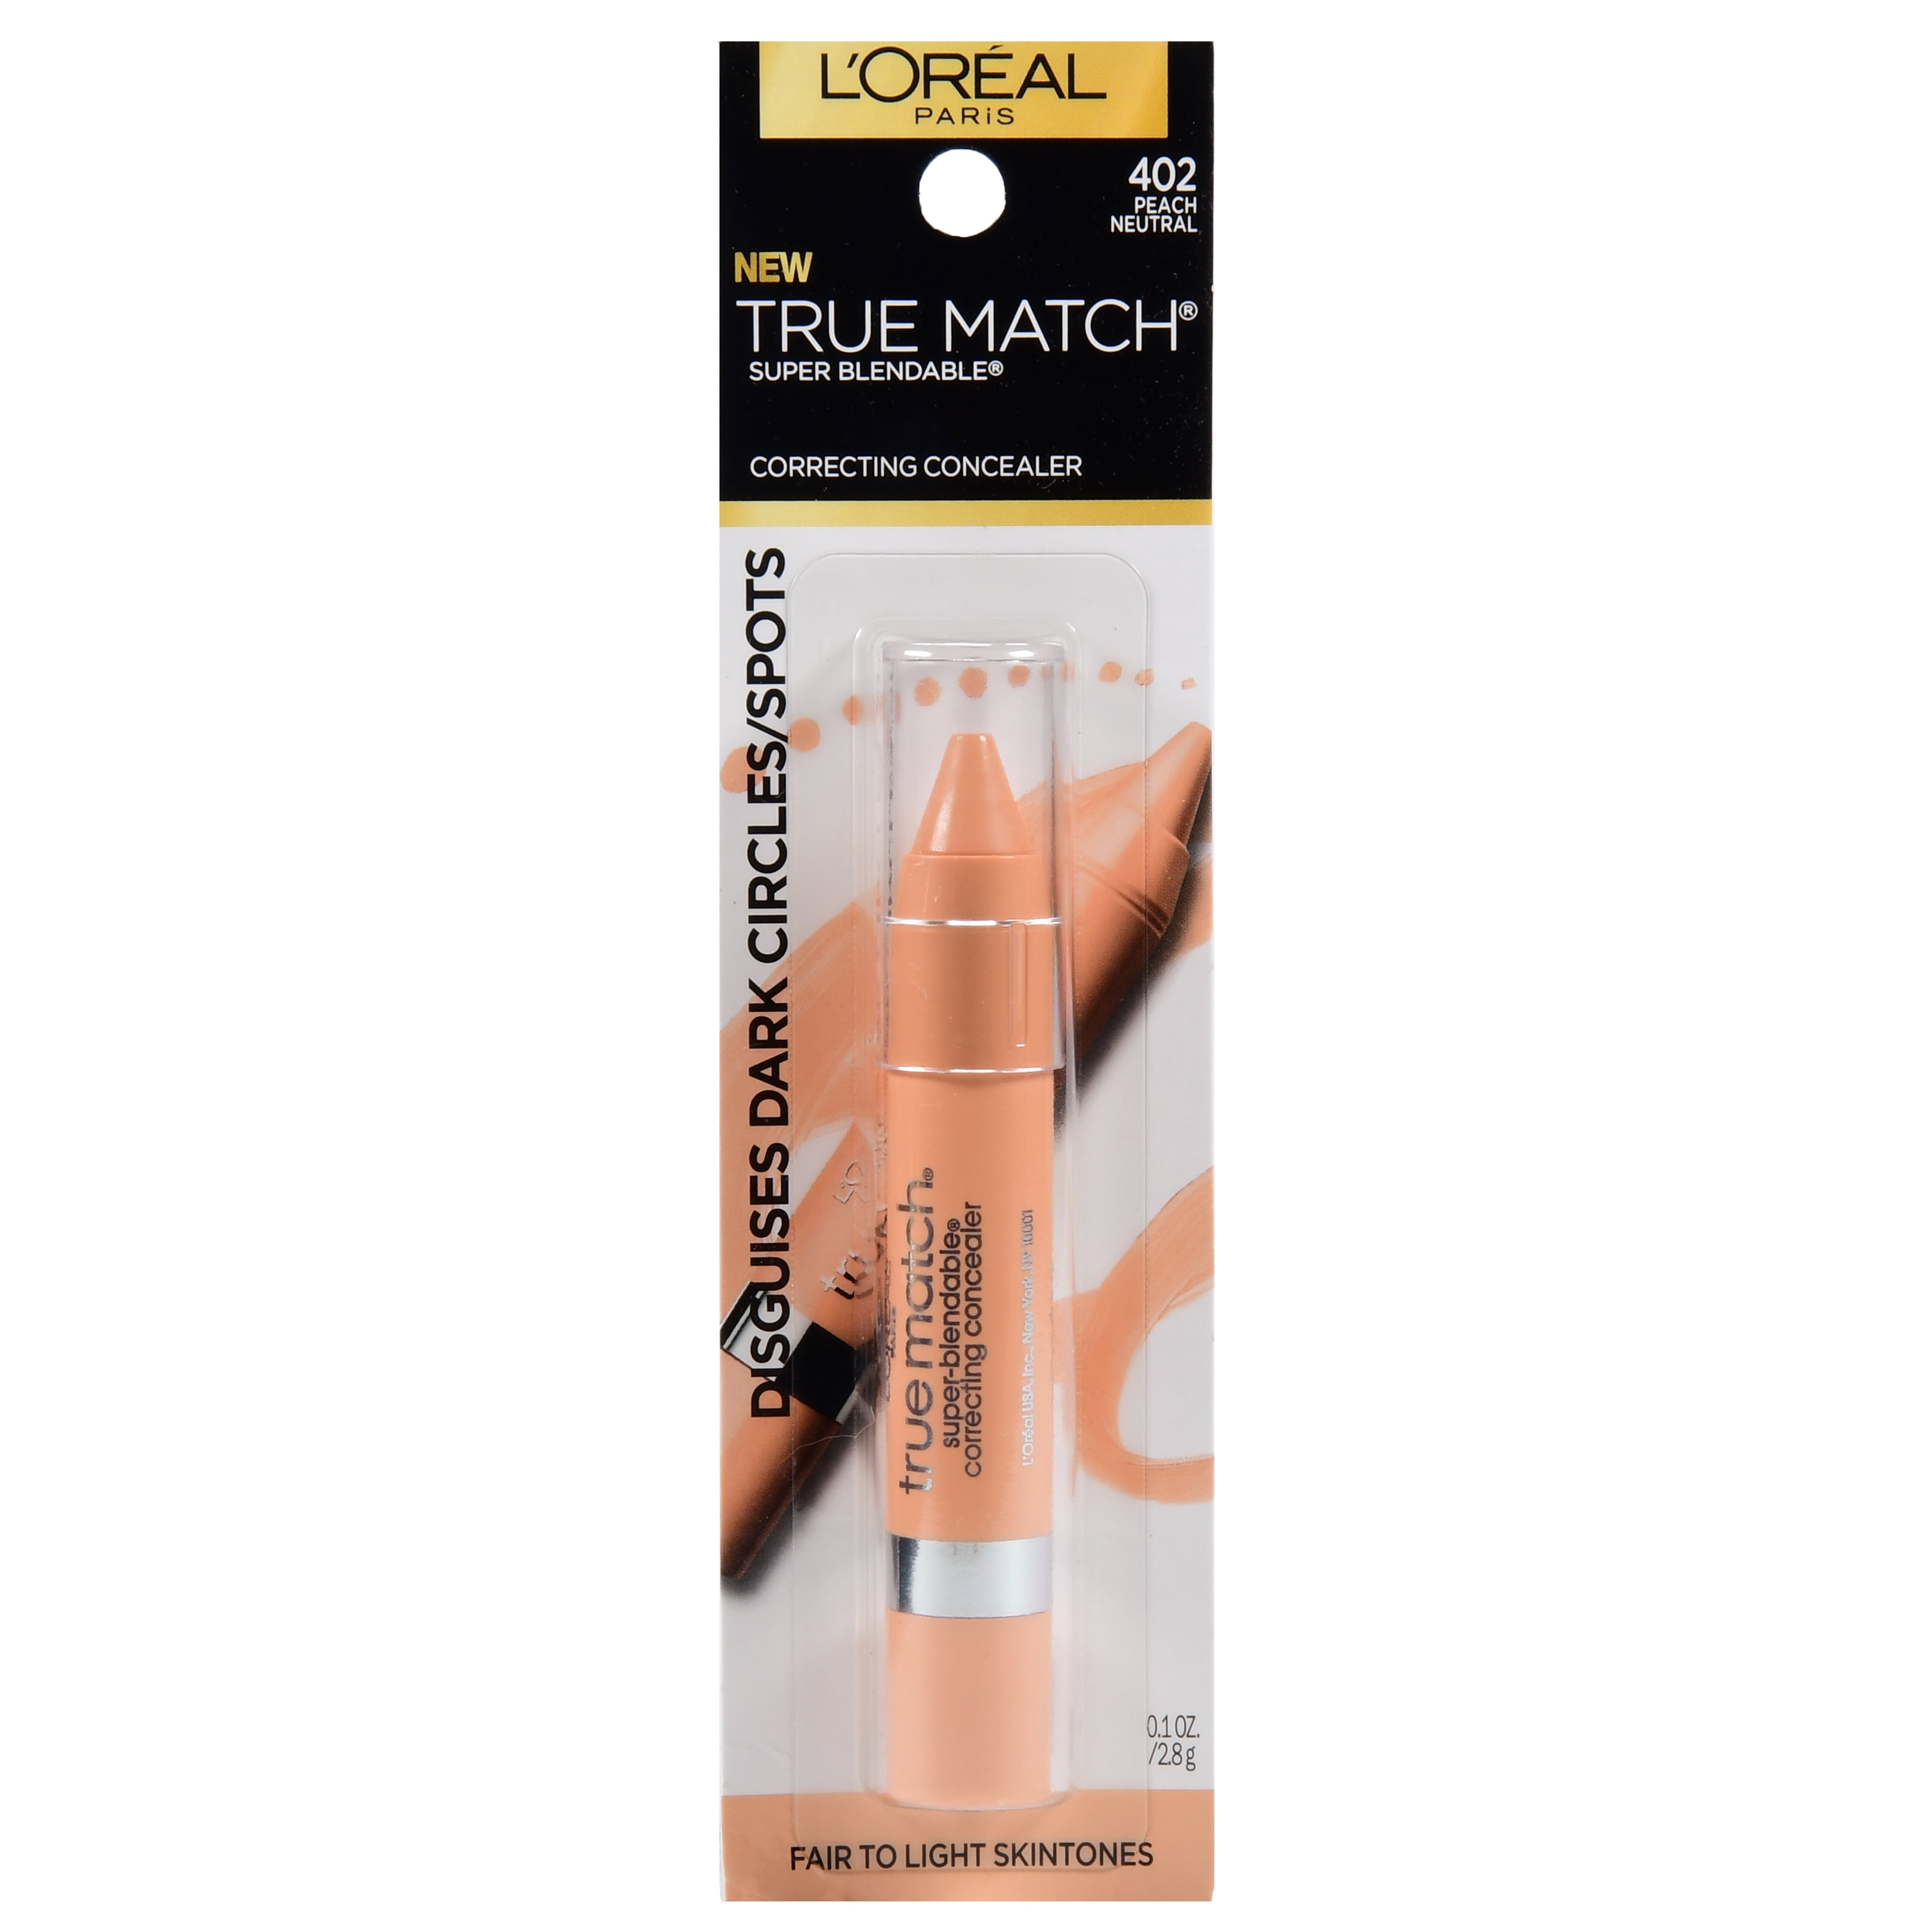 L'Oreal Paris True Match Correcting Crayon Concealer, fl oz - Walmart.com